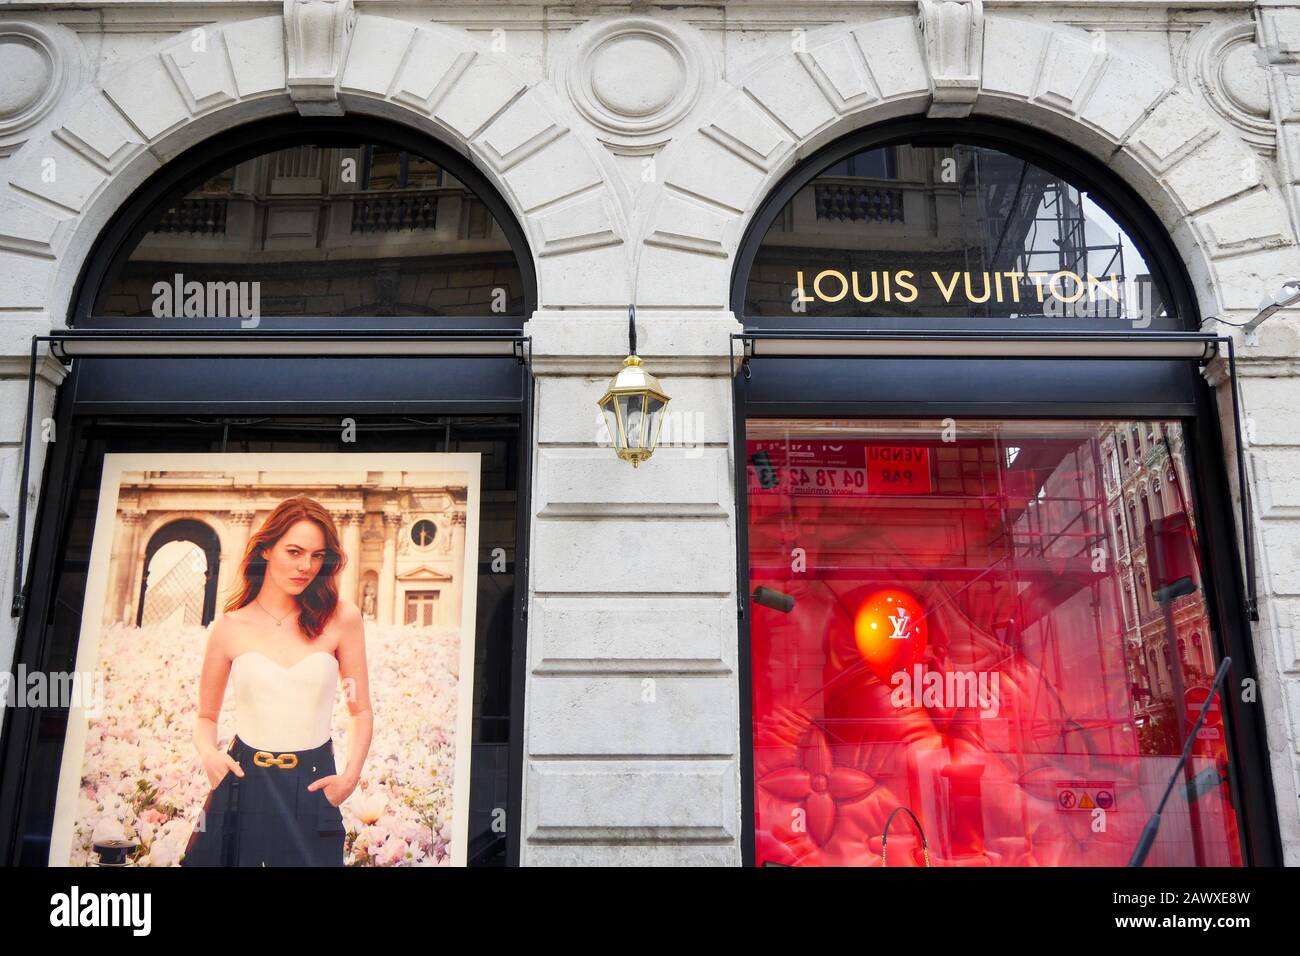 Louis Vuitton shop, Lyon, France Stock Photo - Alamy